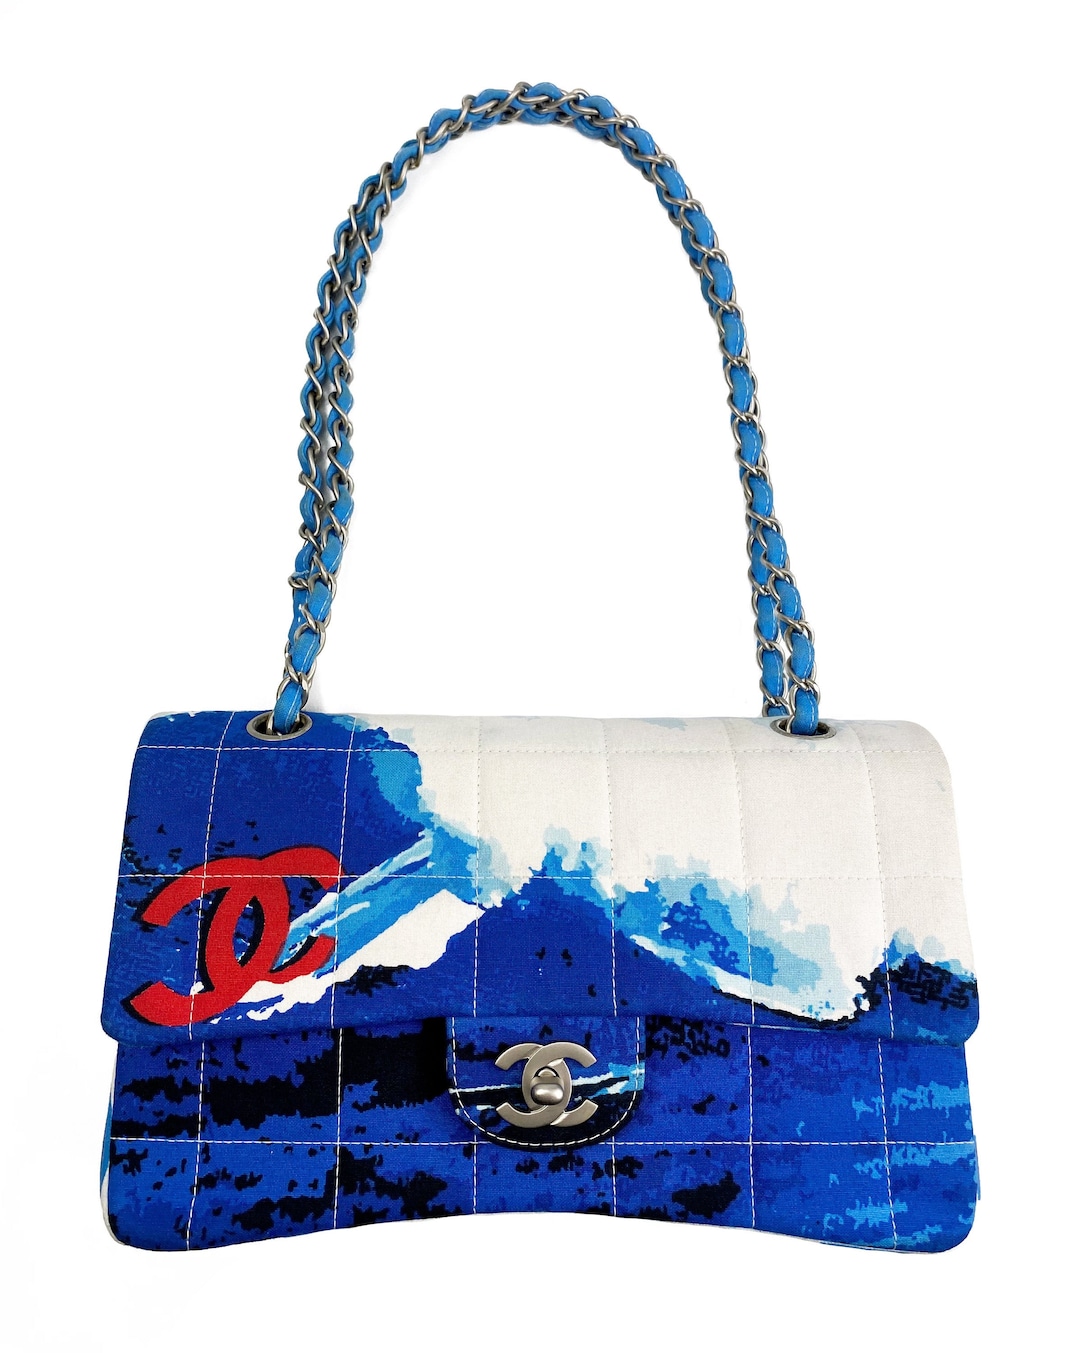 CHANEL Vintage Surf Bag Logo Print Quilted Canvas Flap Handbag 